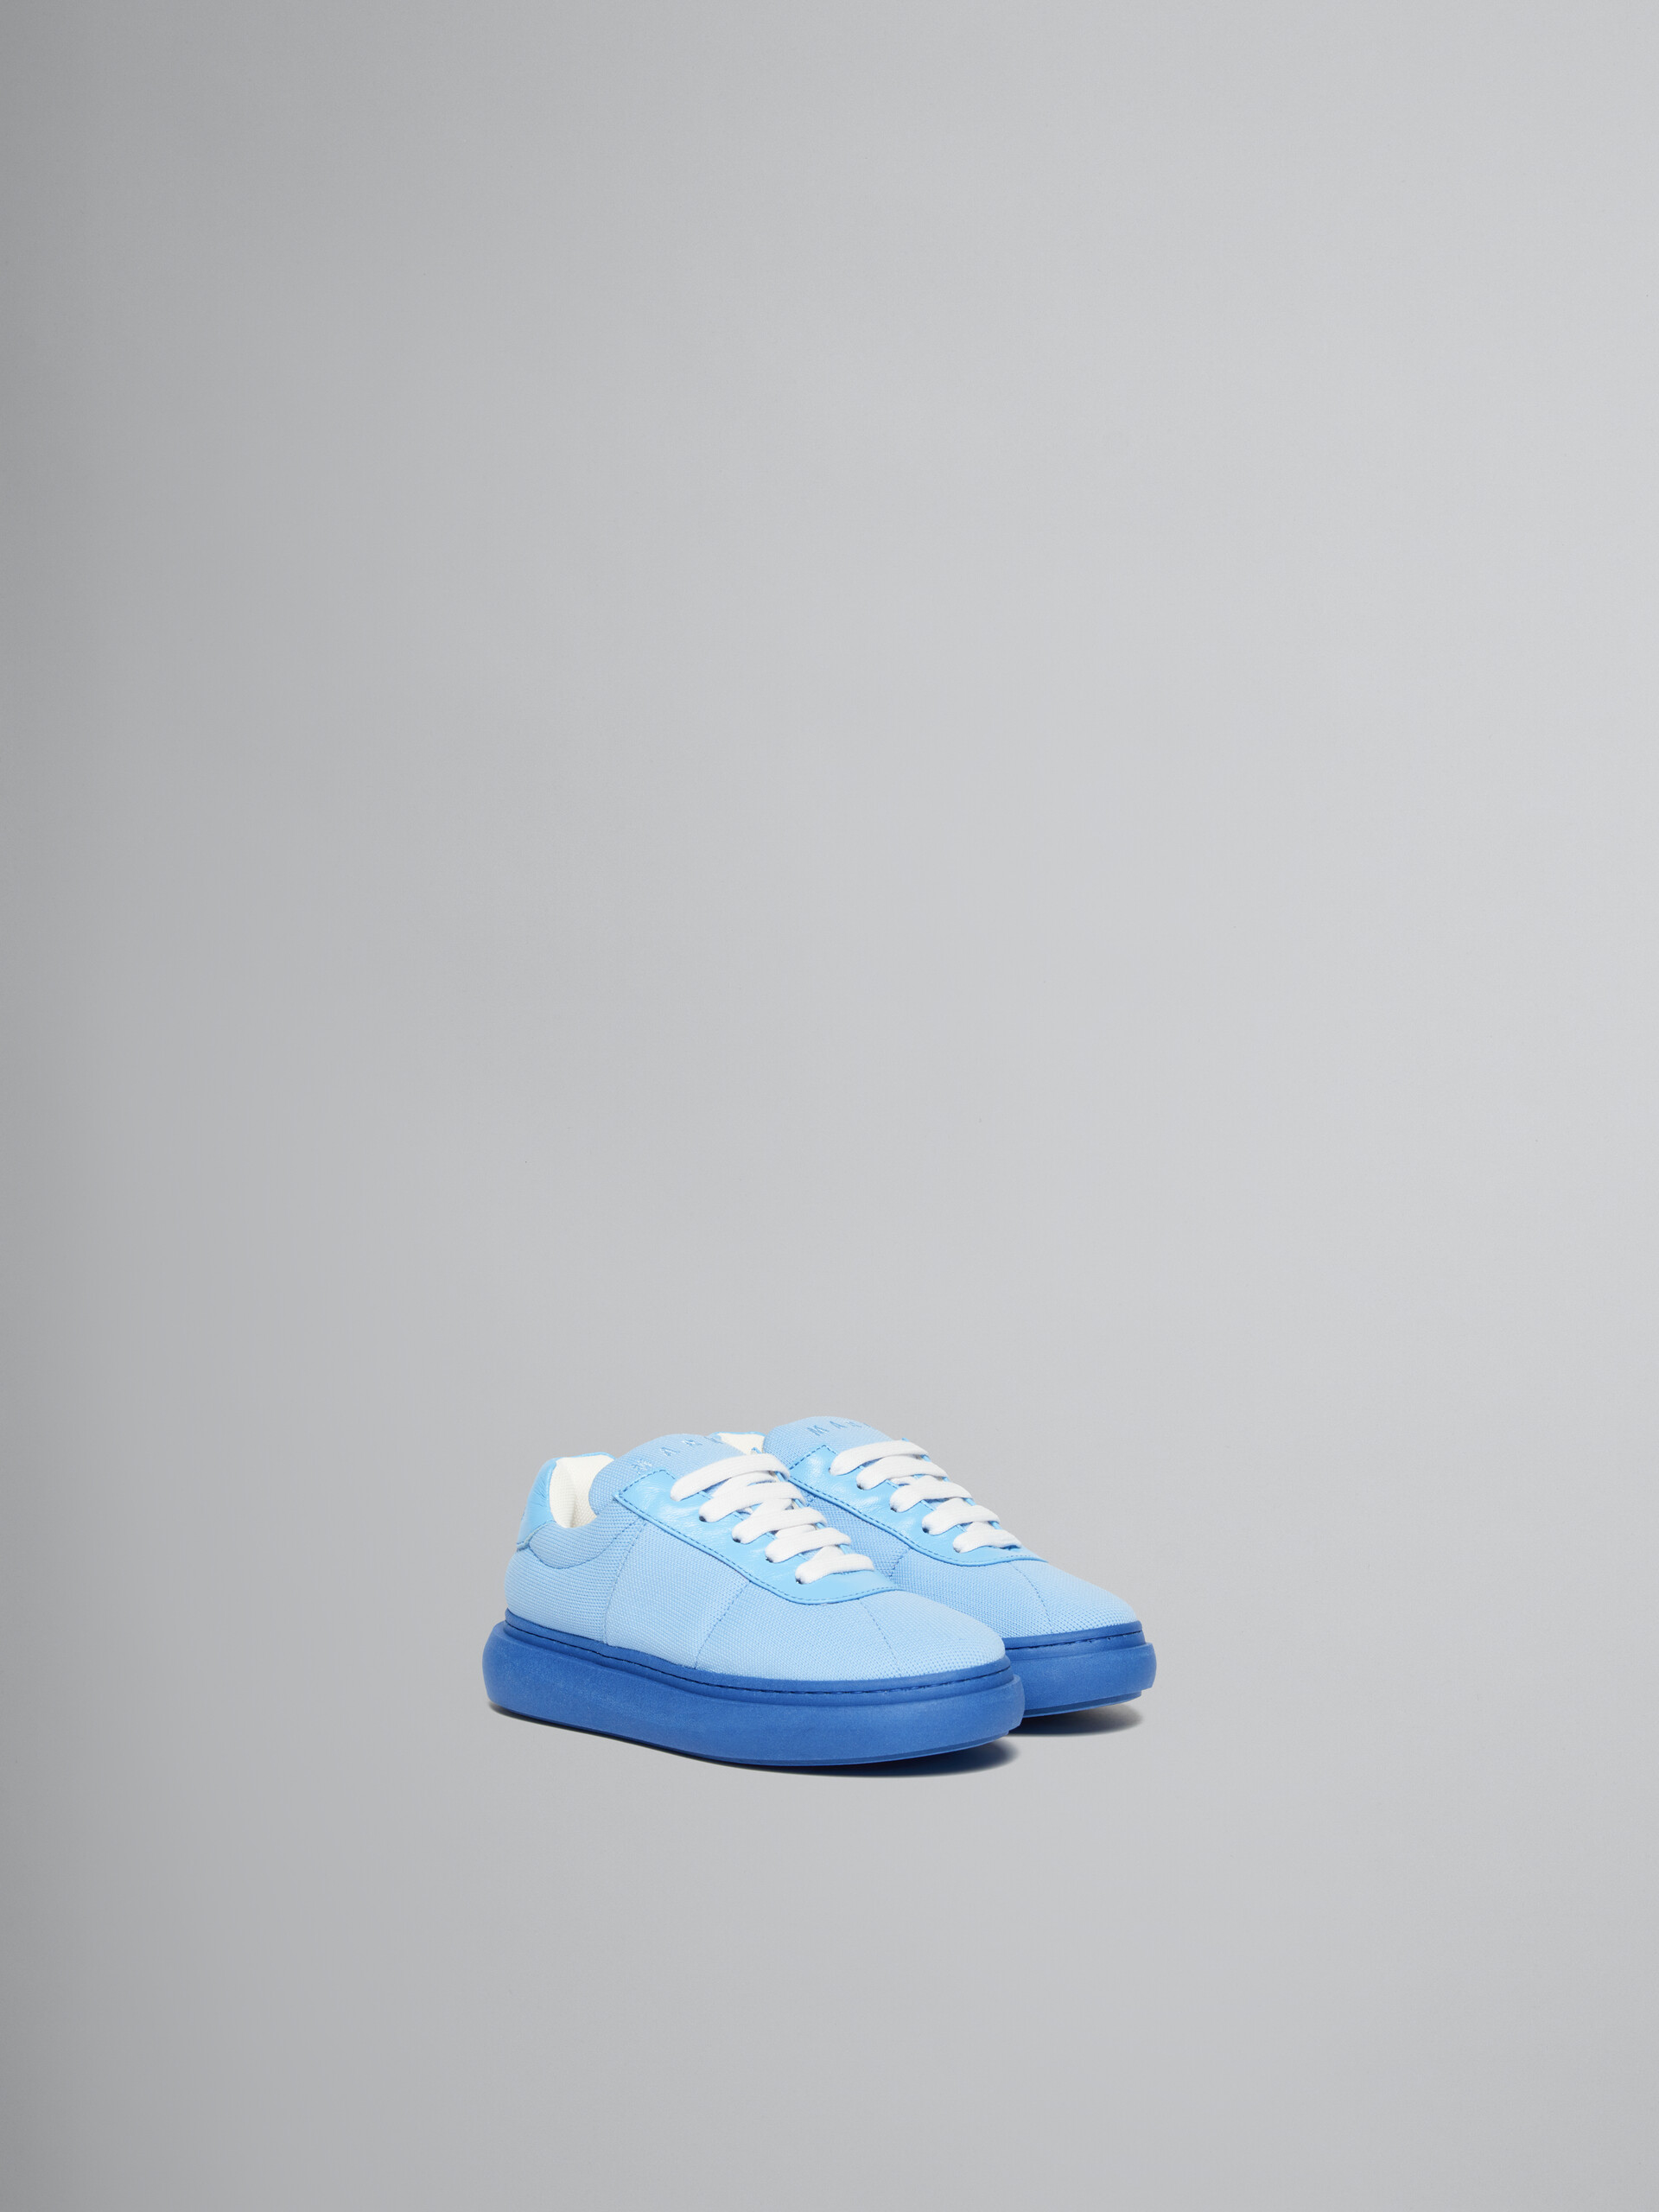 Hellblaue Sneakers aus gepolstertem Leder - KINDER - Image 2